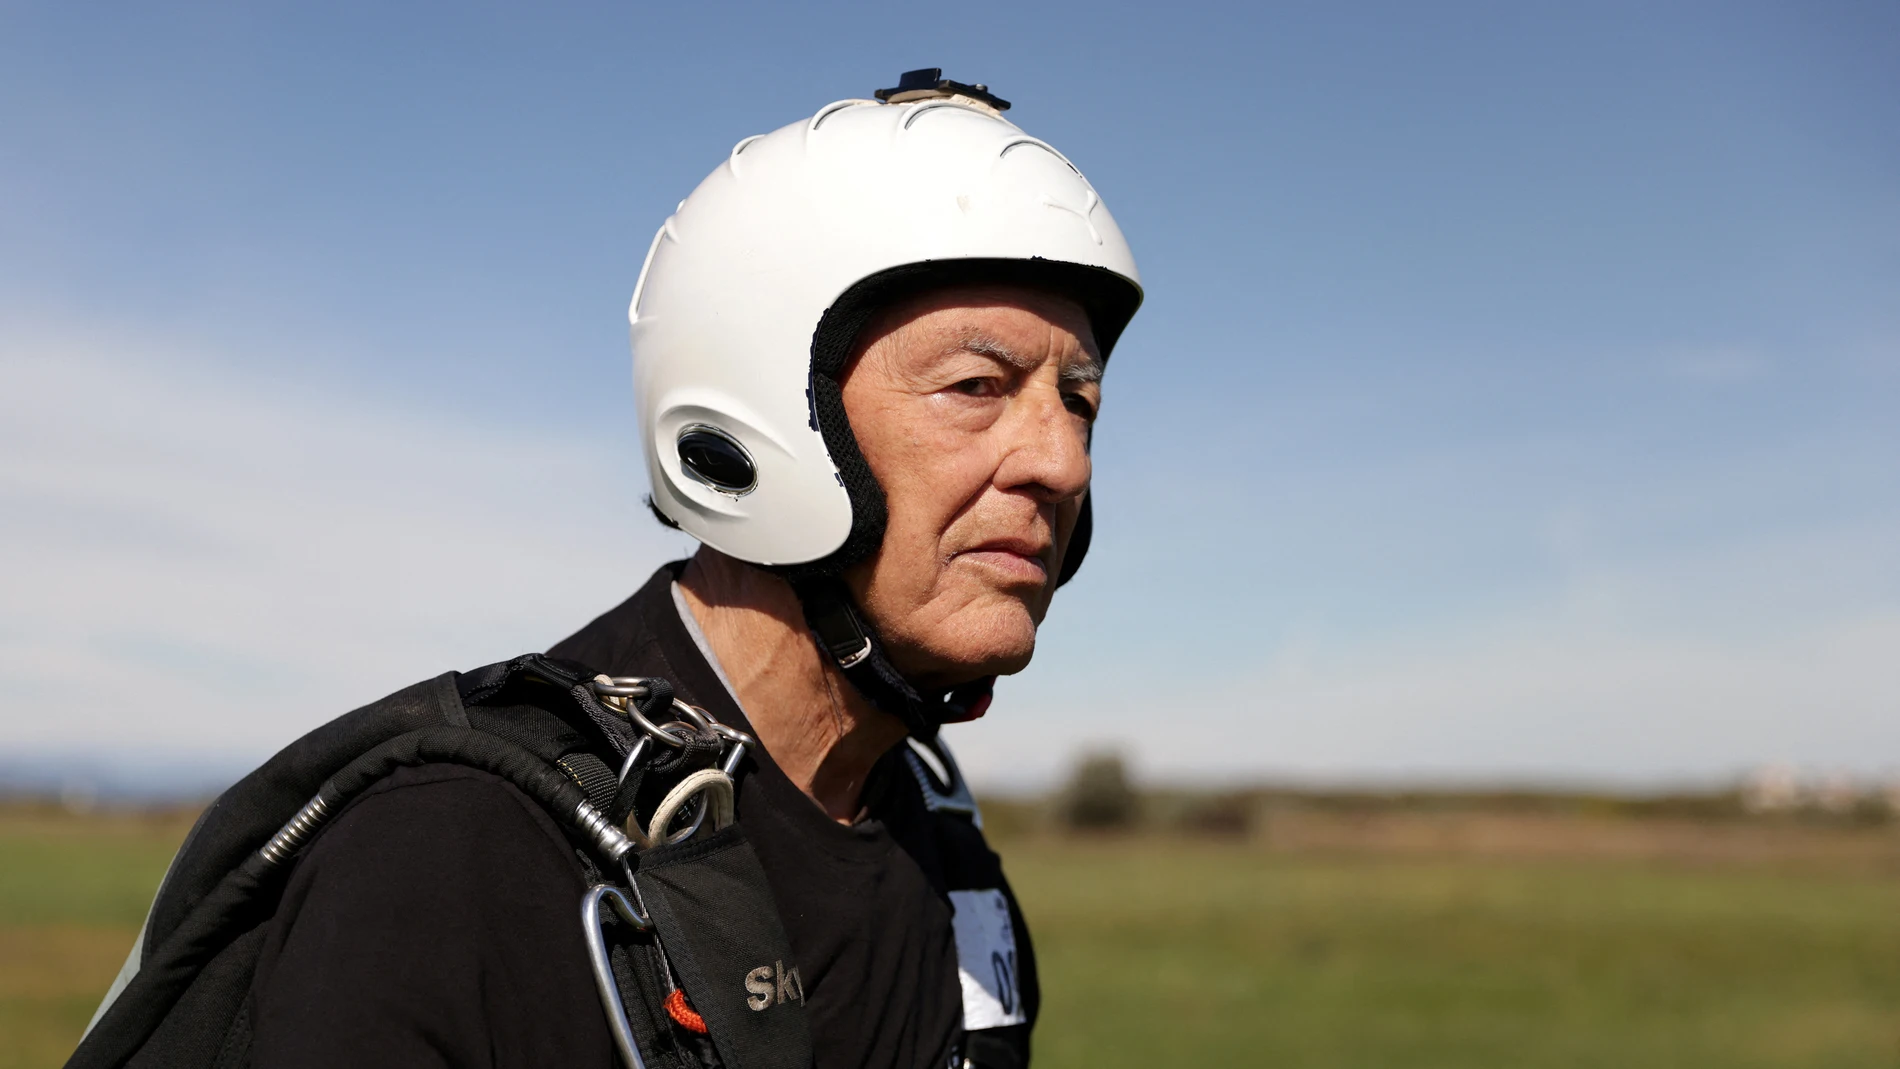 Ibrahim Kalesic, el paracaidista en activo más veterano de Europa